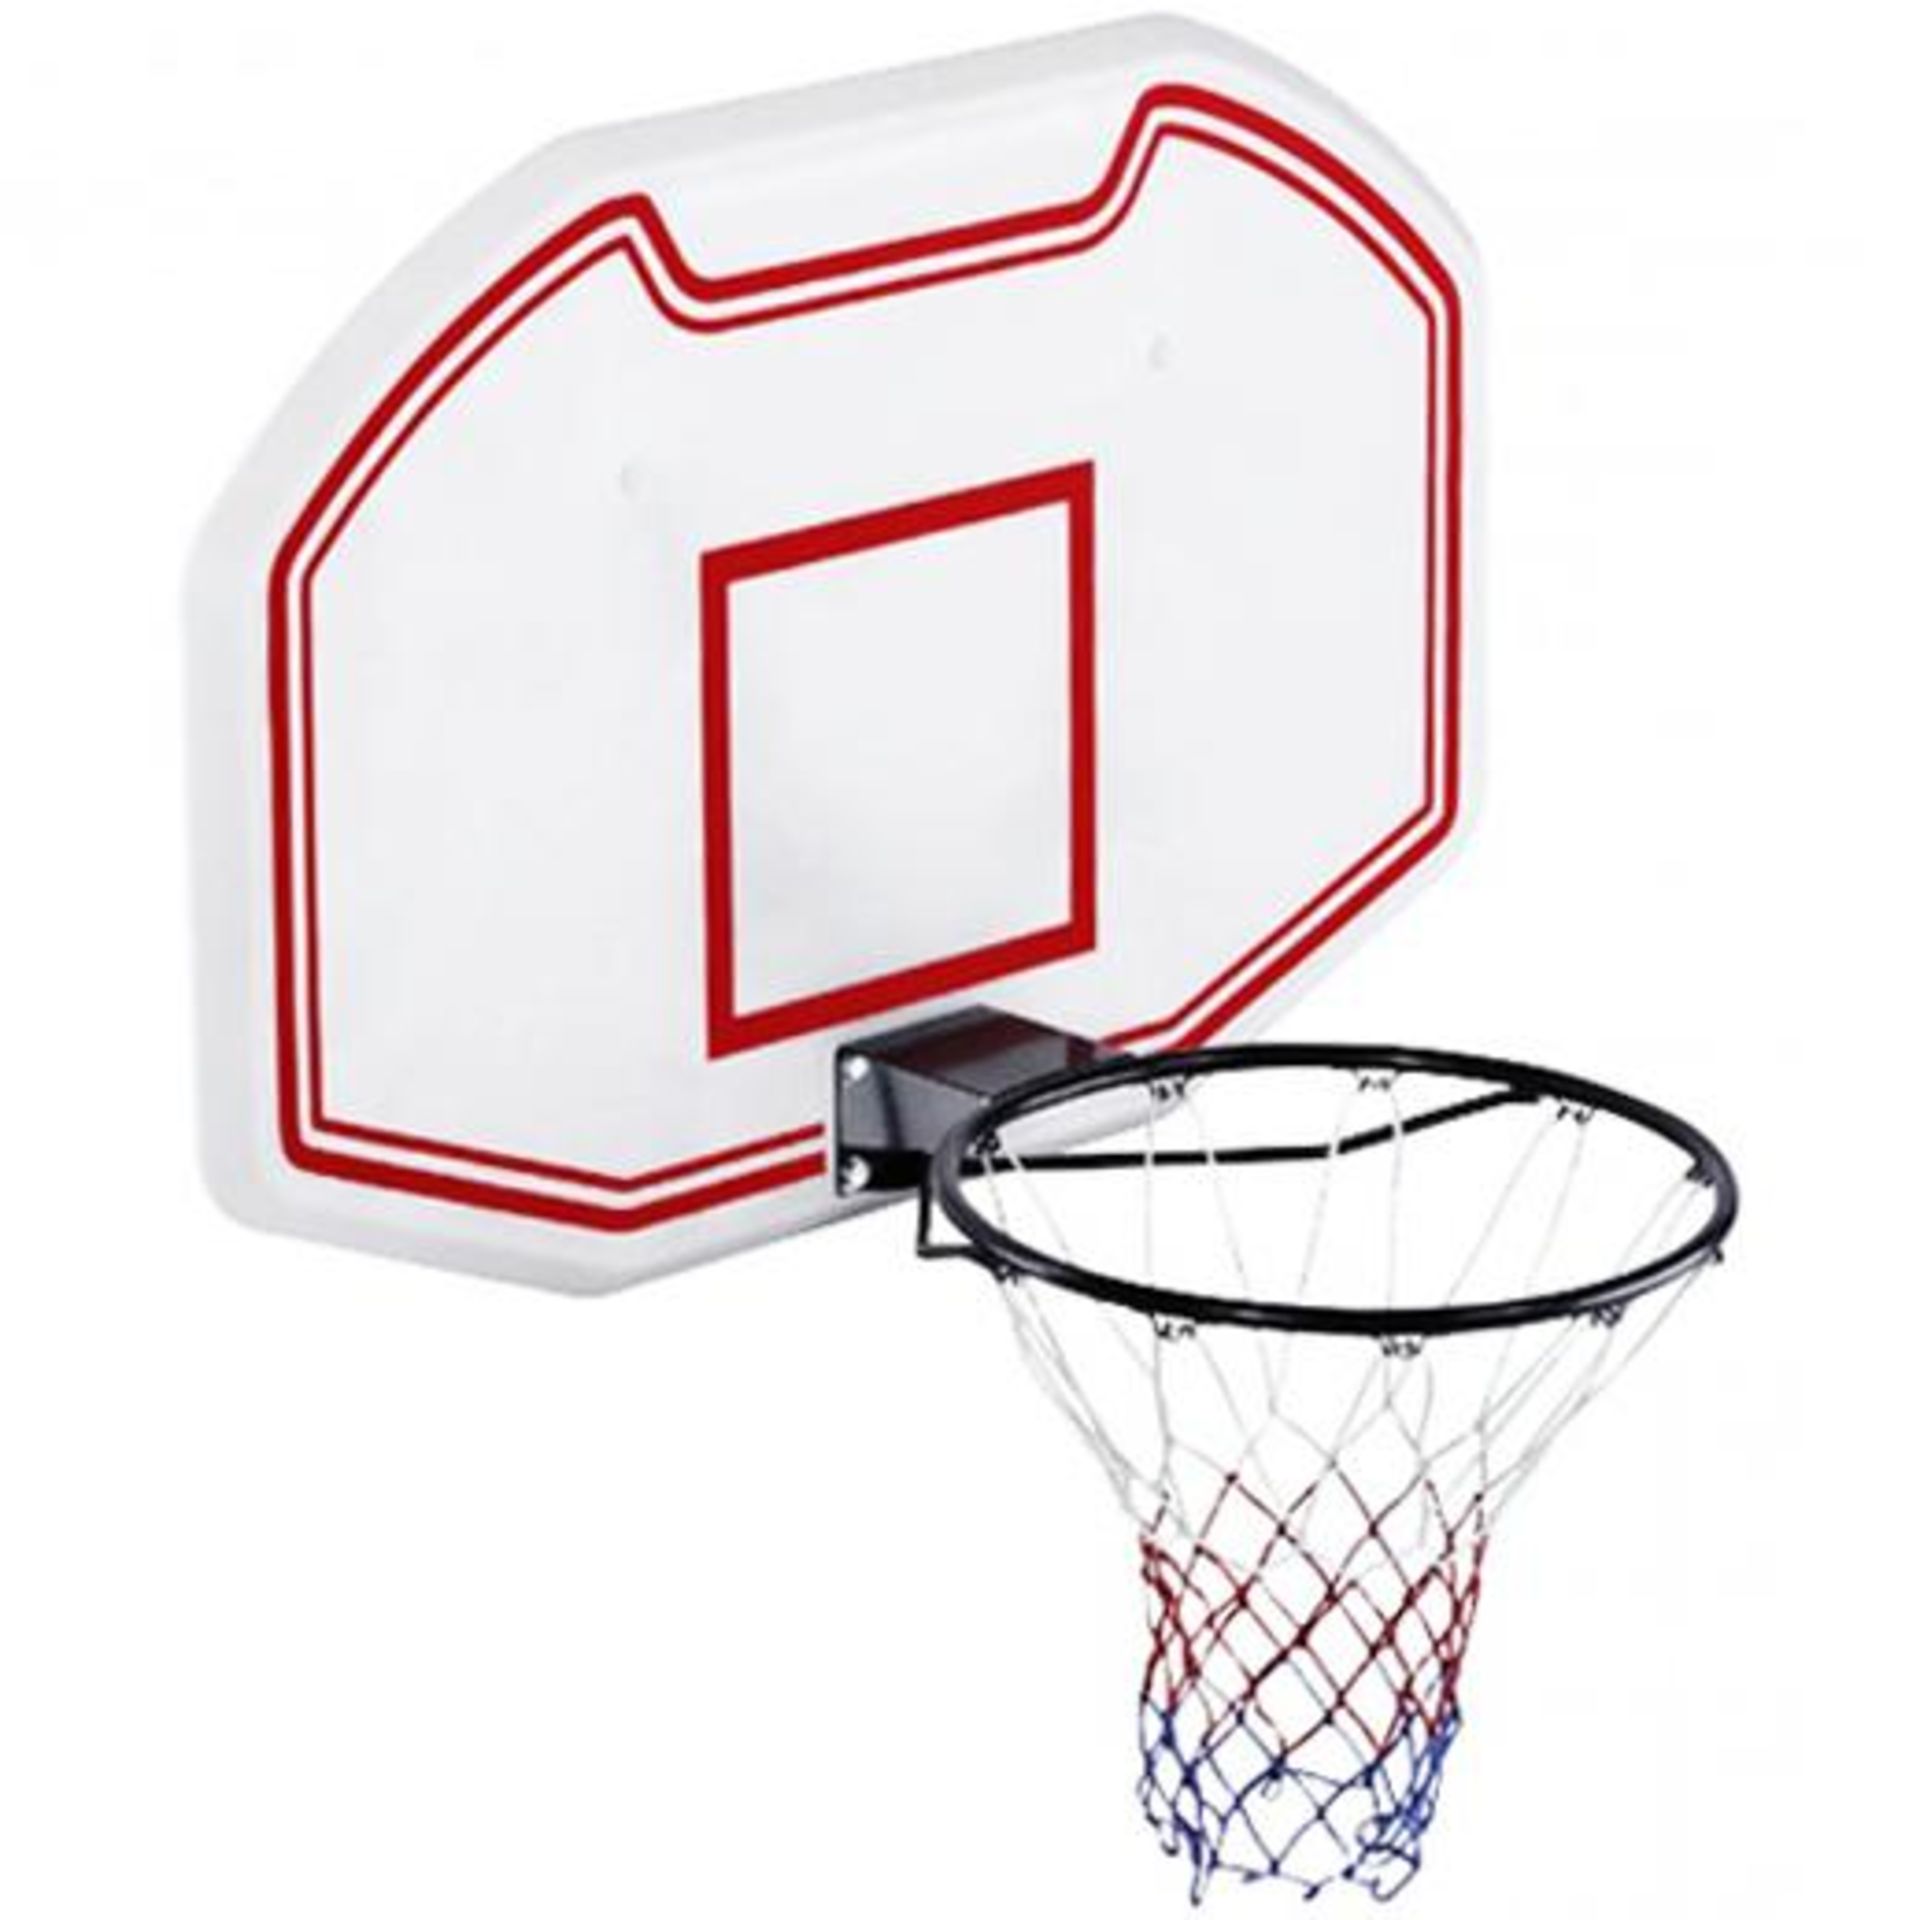 (LF101) Heavy Duty Wall Mounted Full Size Basketball Backboard Hoop Net Includes all the fitti...